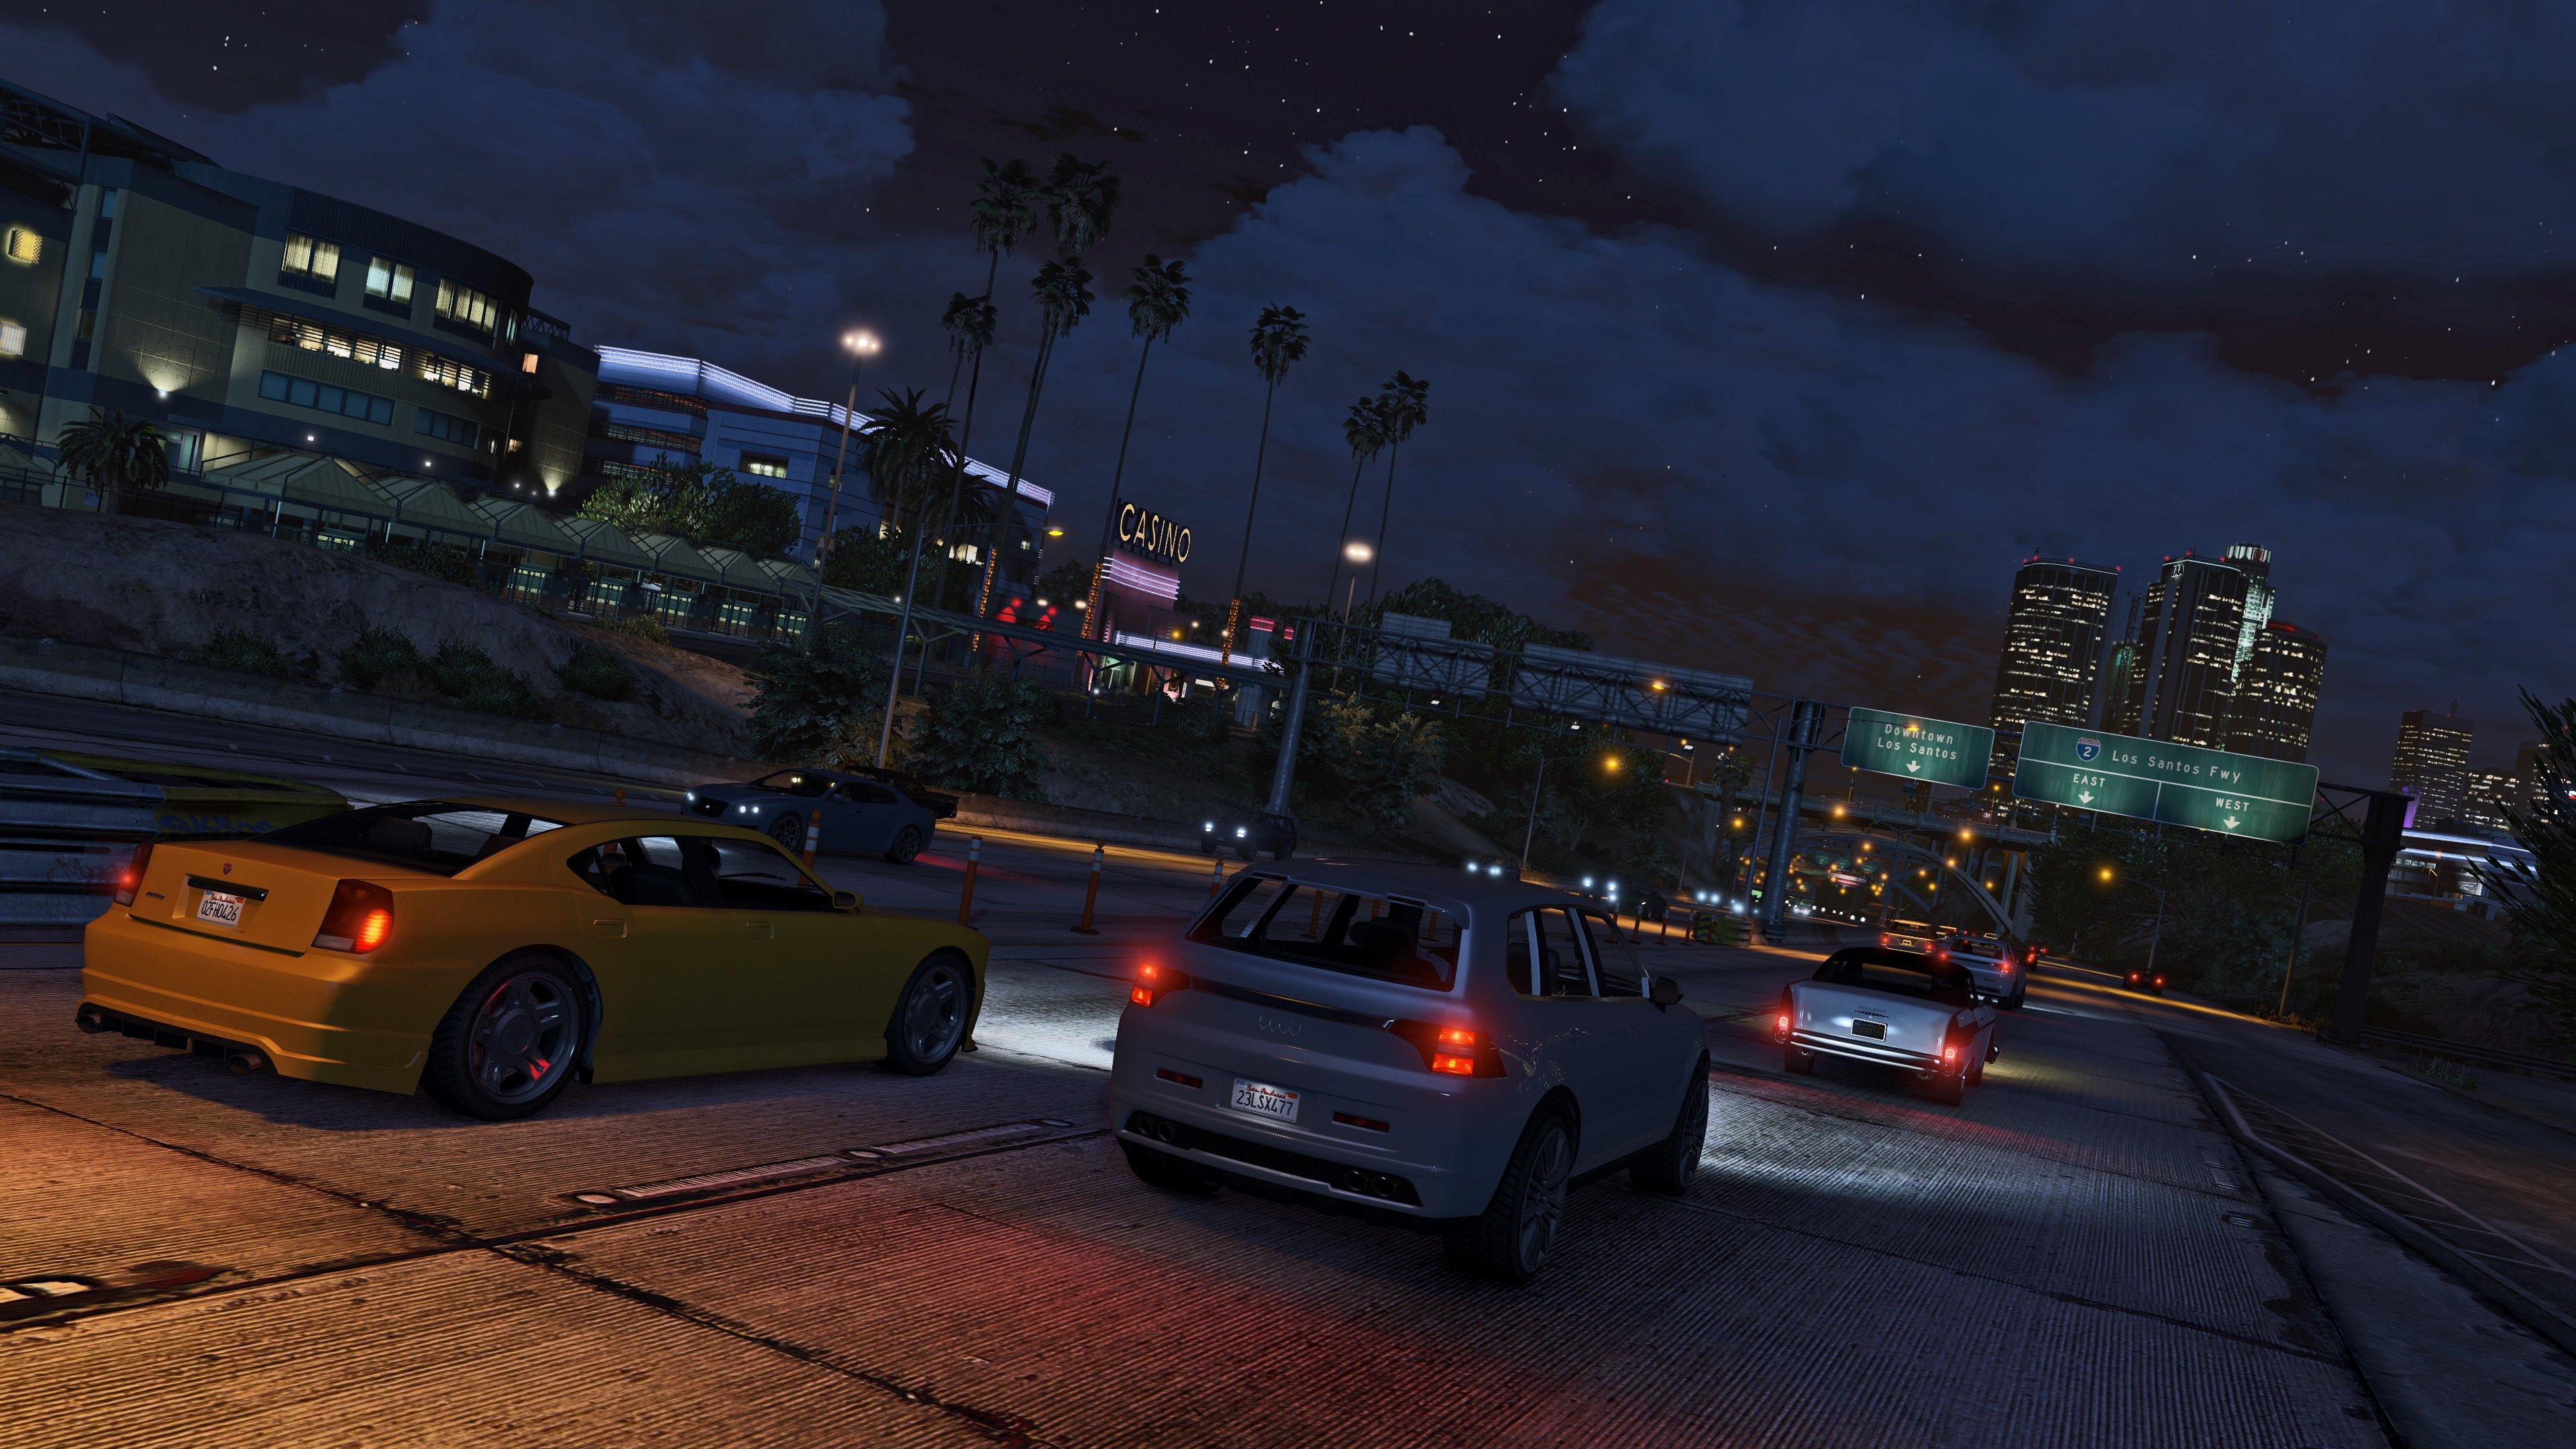 Grand Theft Auto V Premium Online Edition, GTA 5 - MMOGA